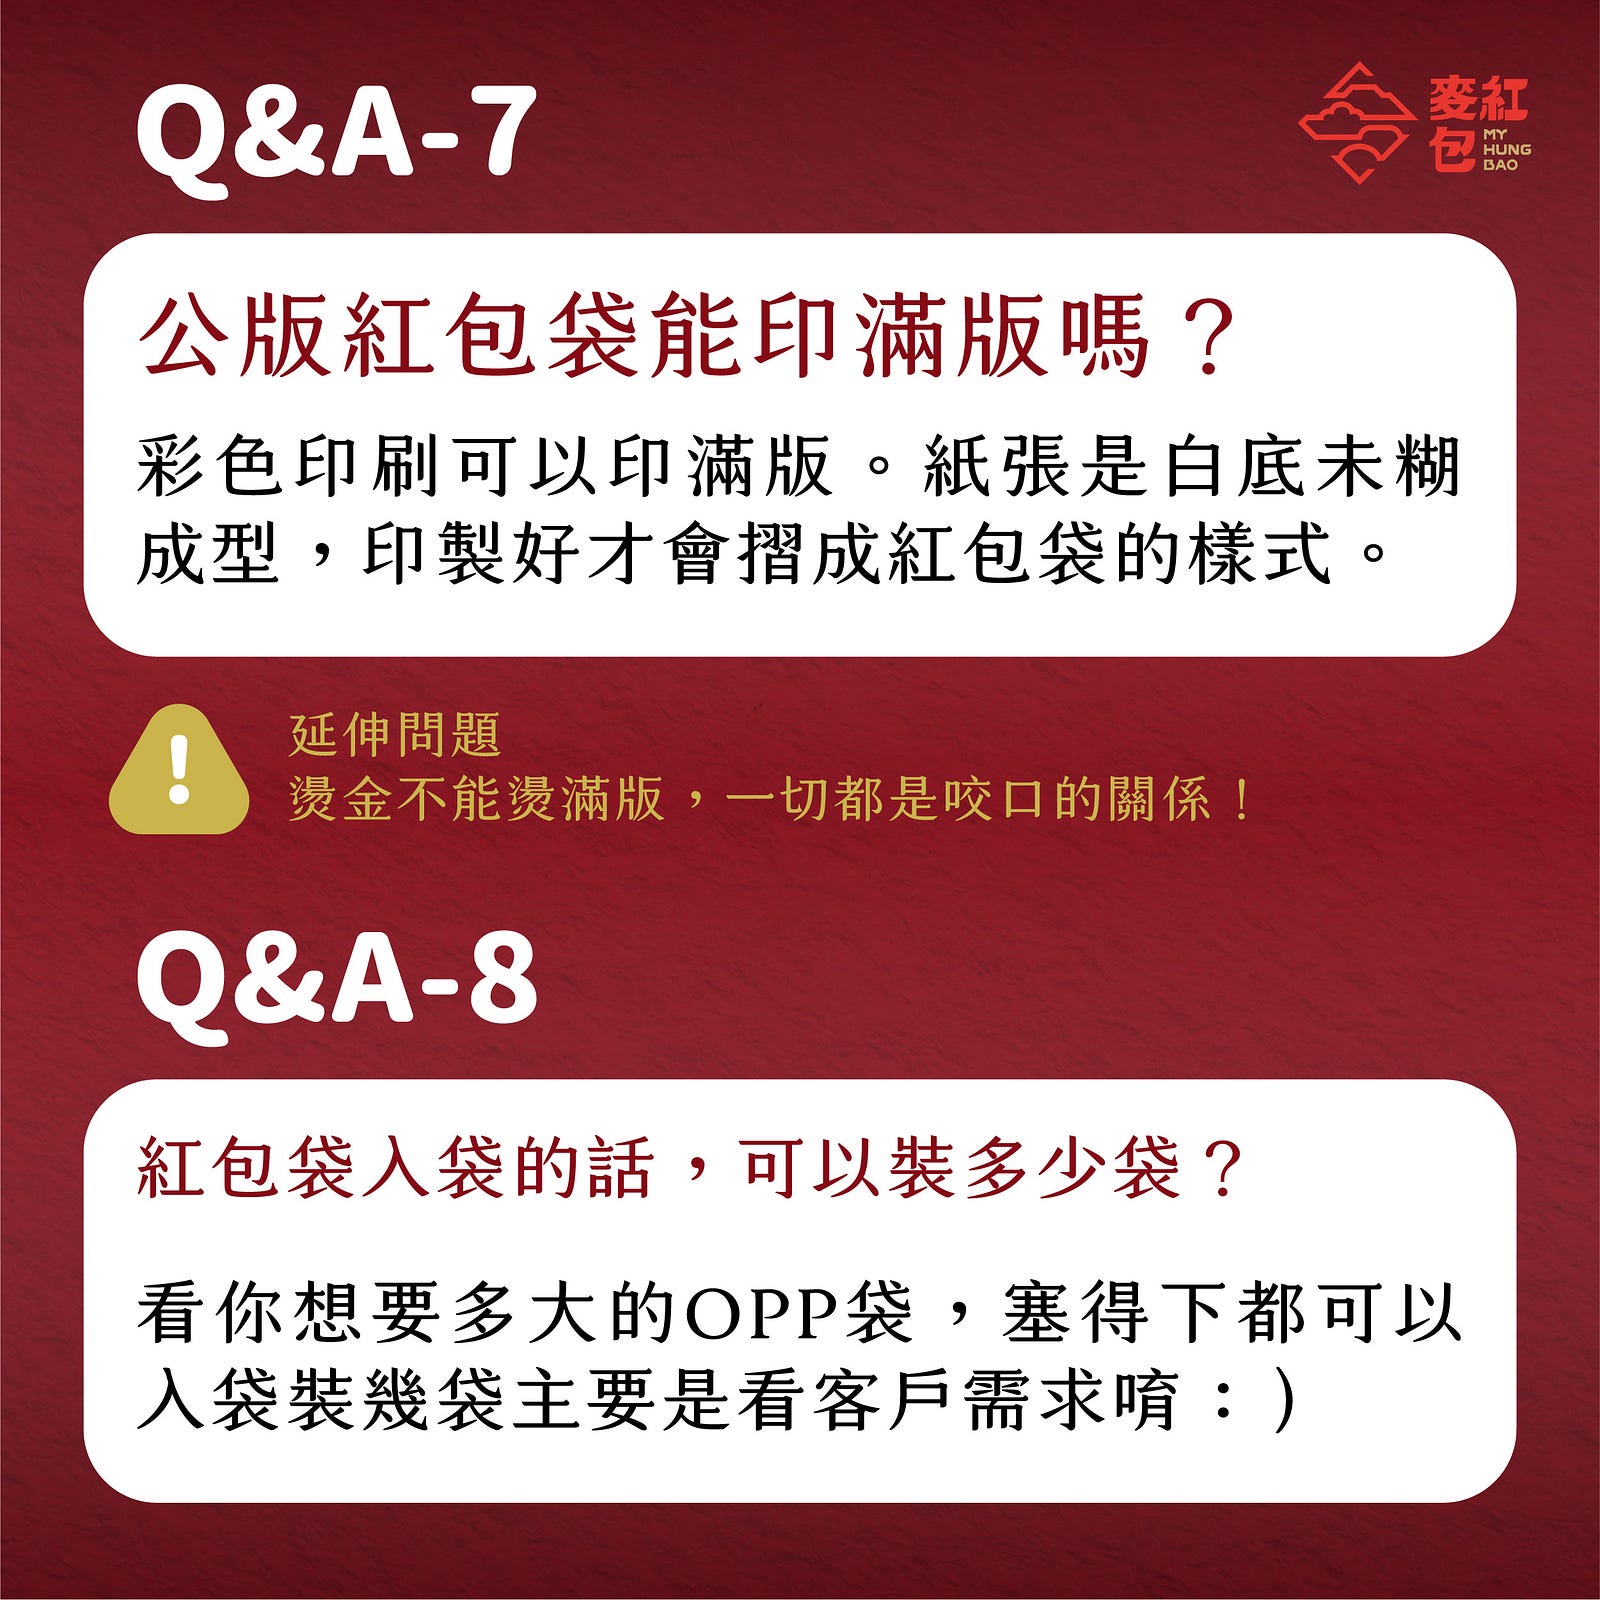 【印前Q&A】網友最常問的10個紅包印製問題-Q&A Part7 & Q&A Part8